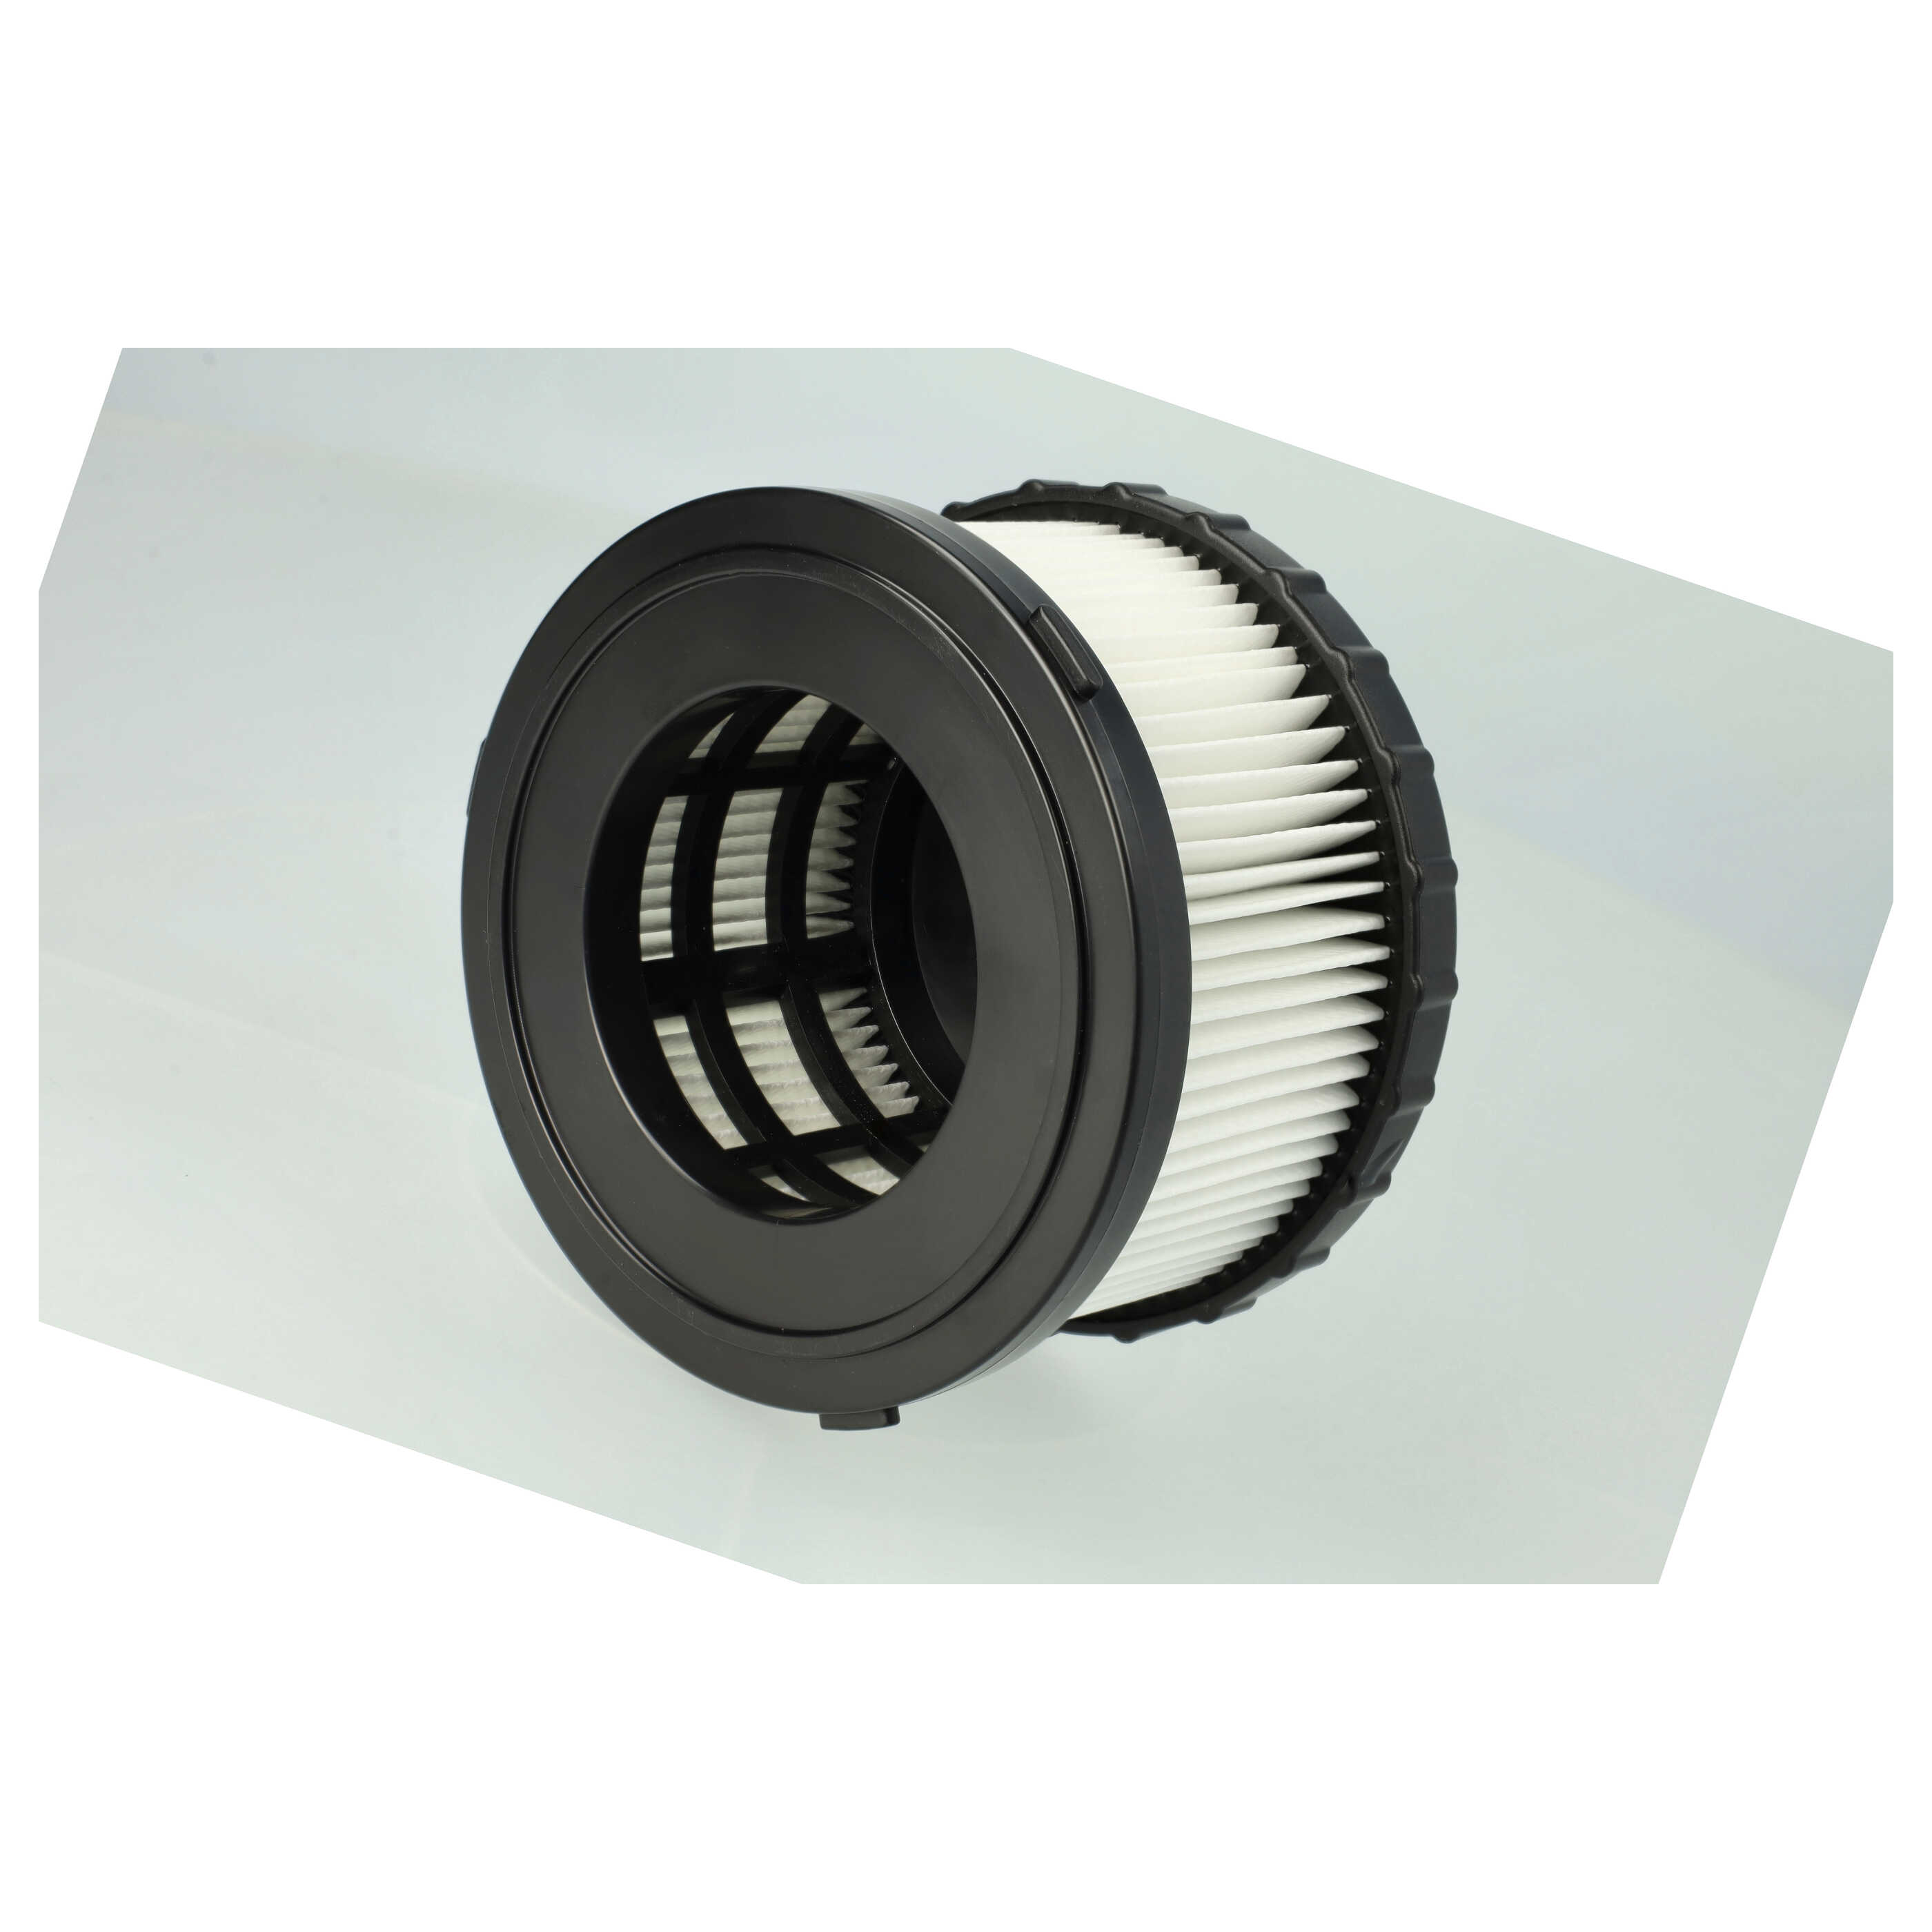 Filtro sostituisce Dewalt DC5151H, DC 5151 H per aspirapolvere - filtro HEPA, nero / bianco